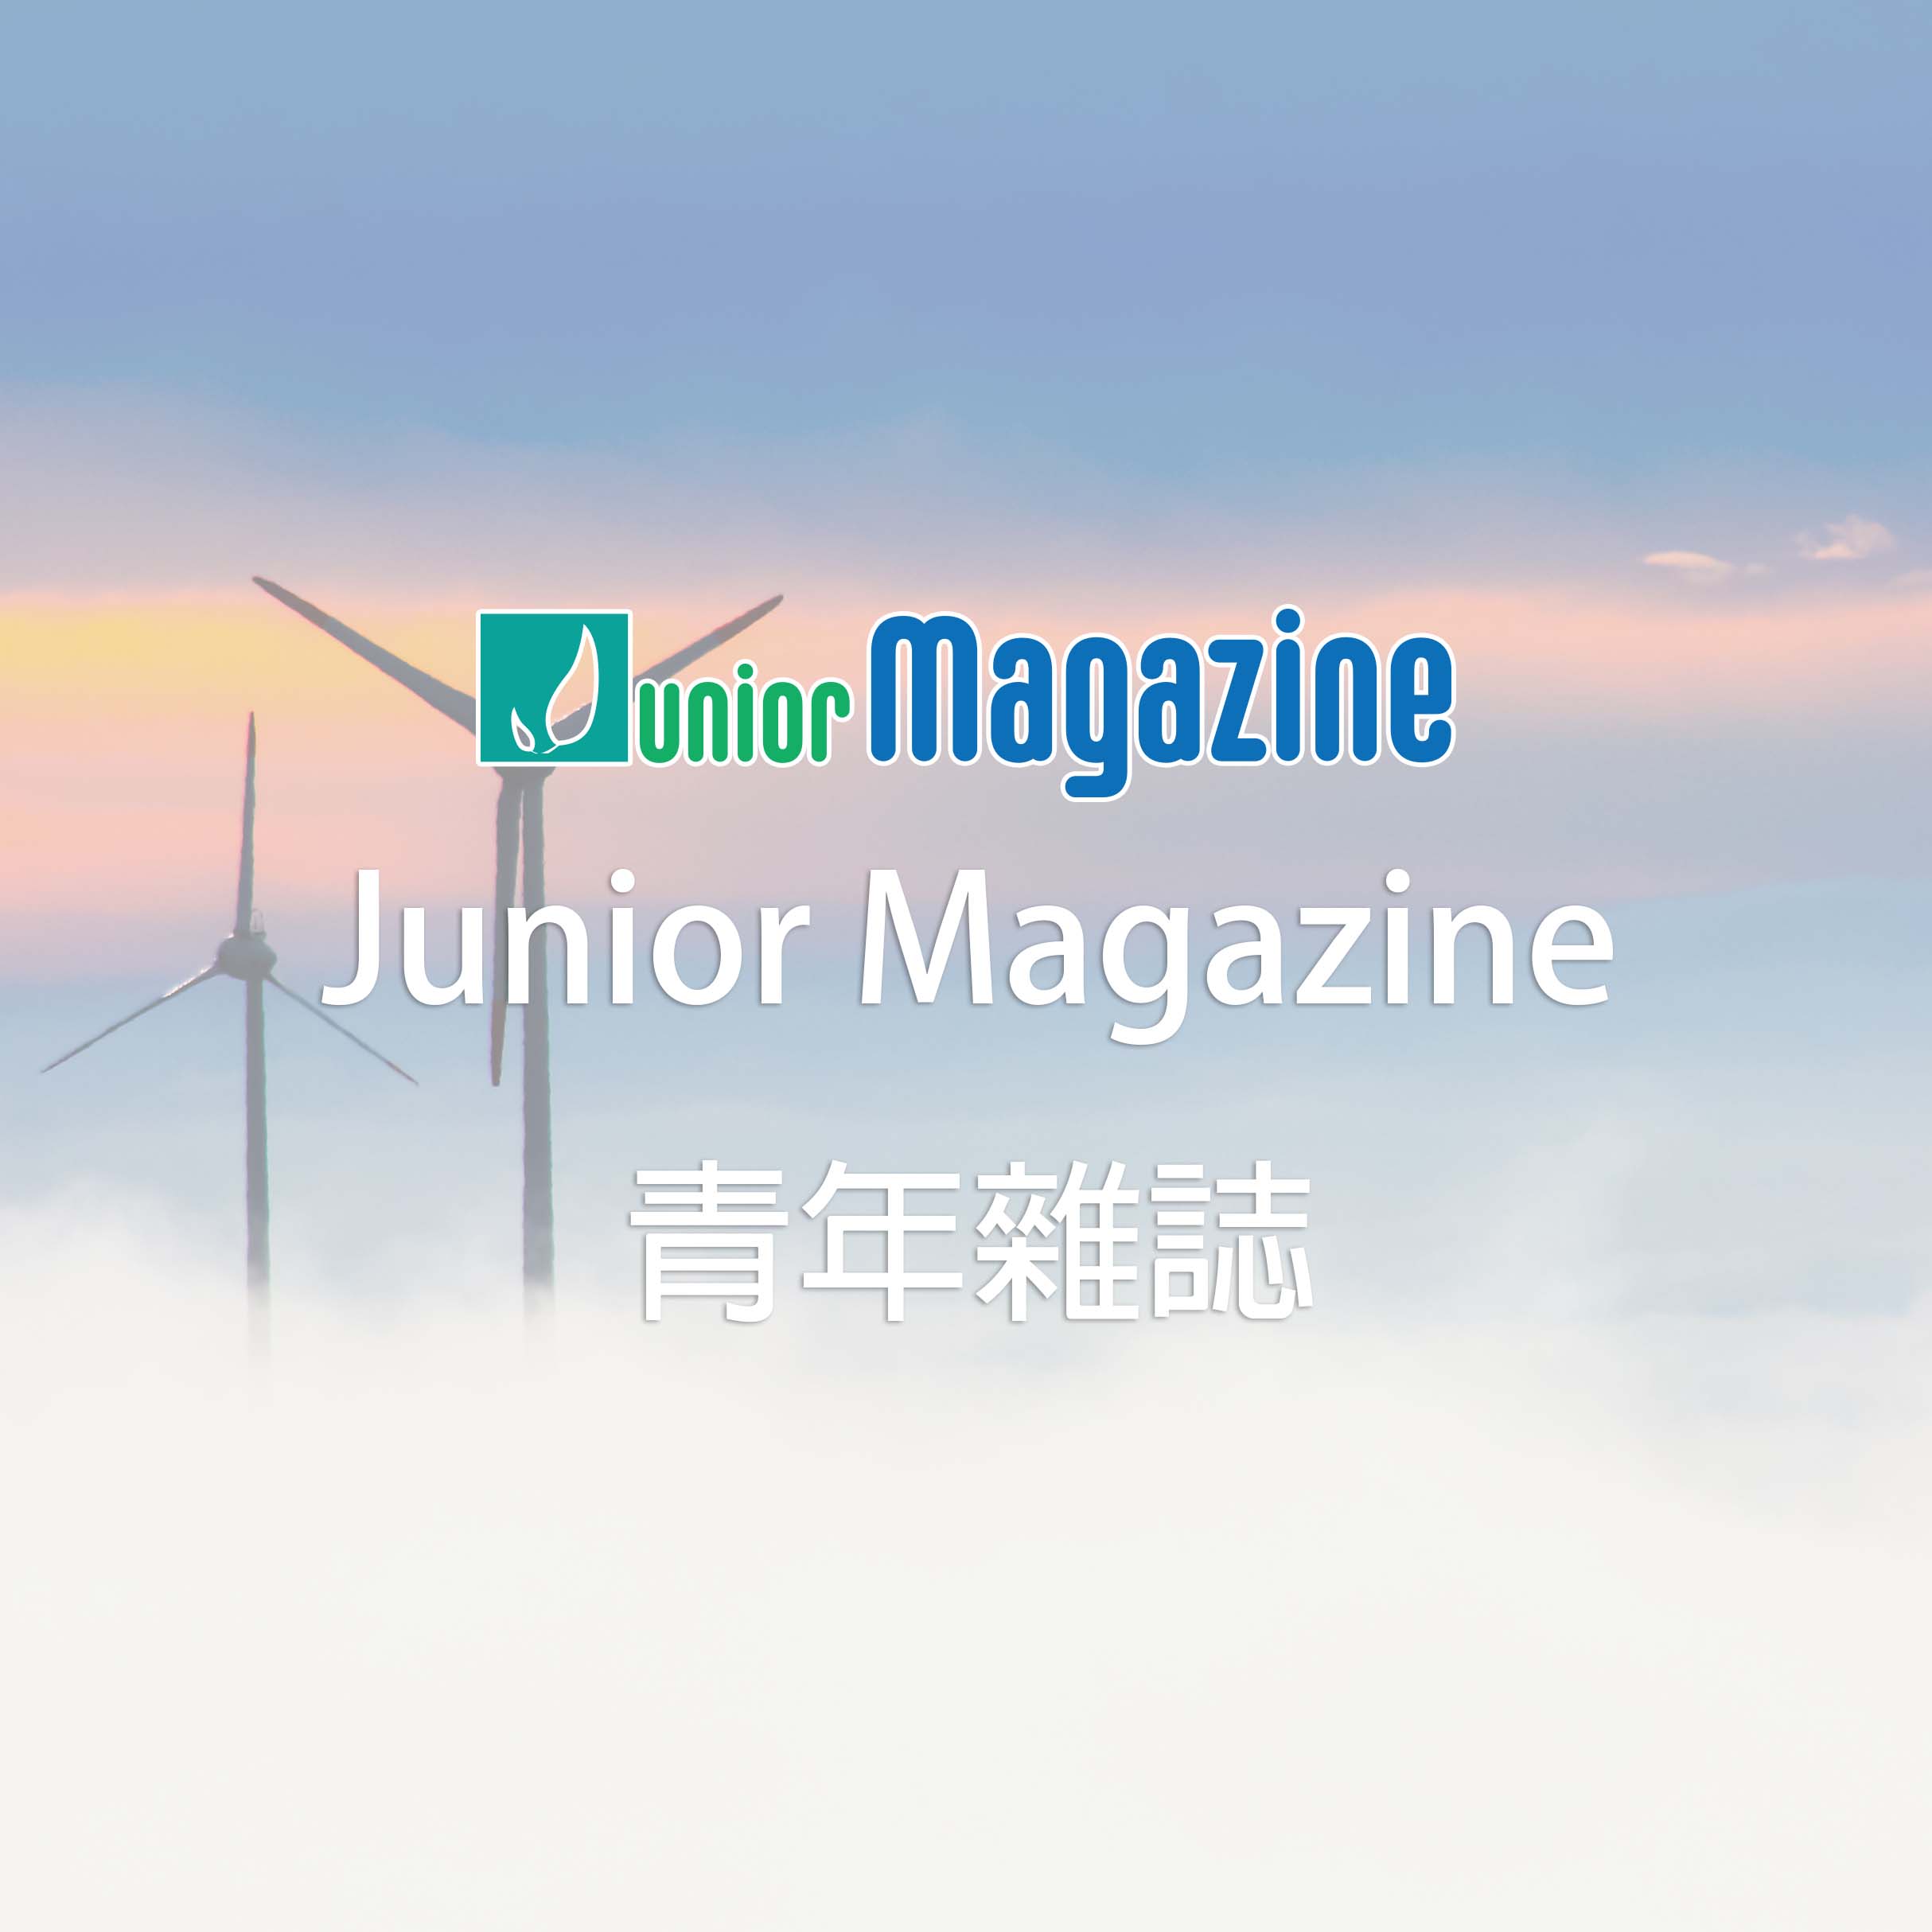 Junior Magazine 青年雜誌